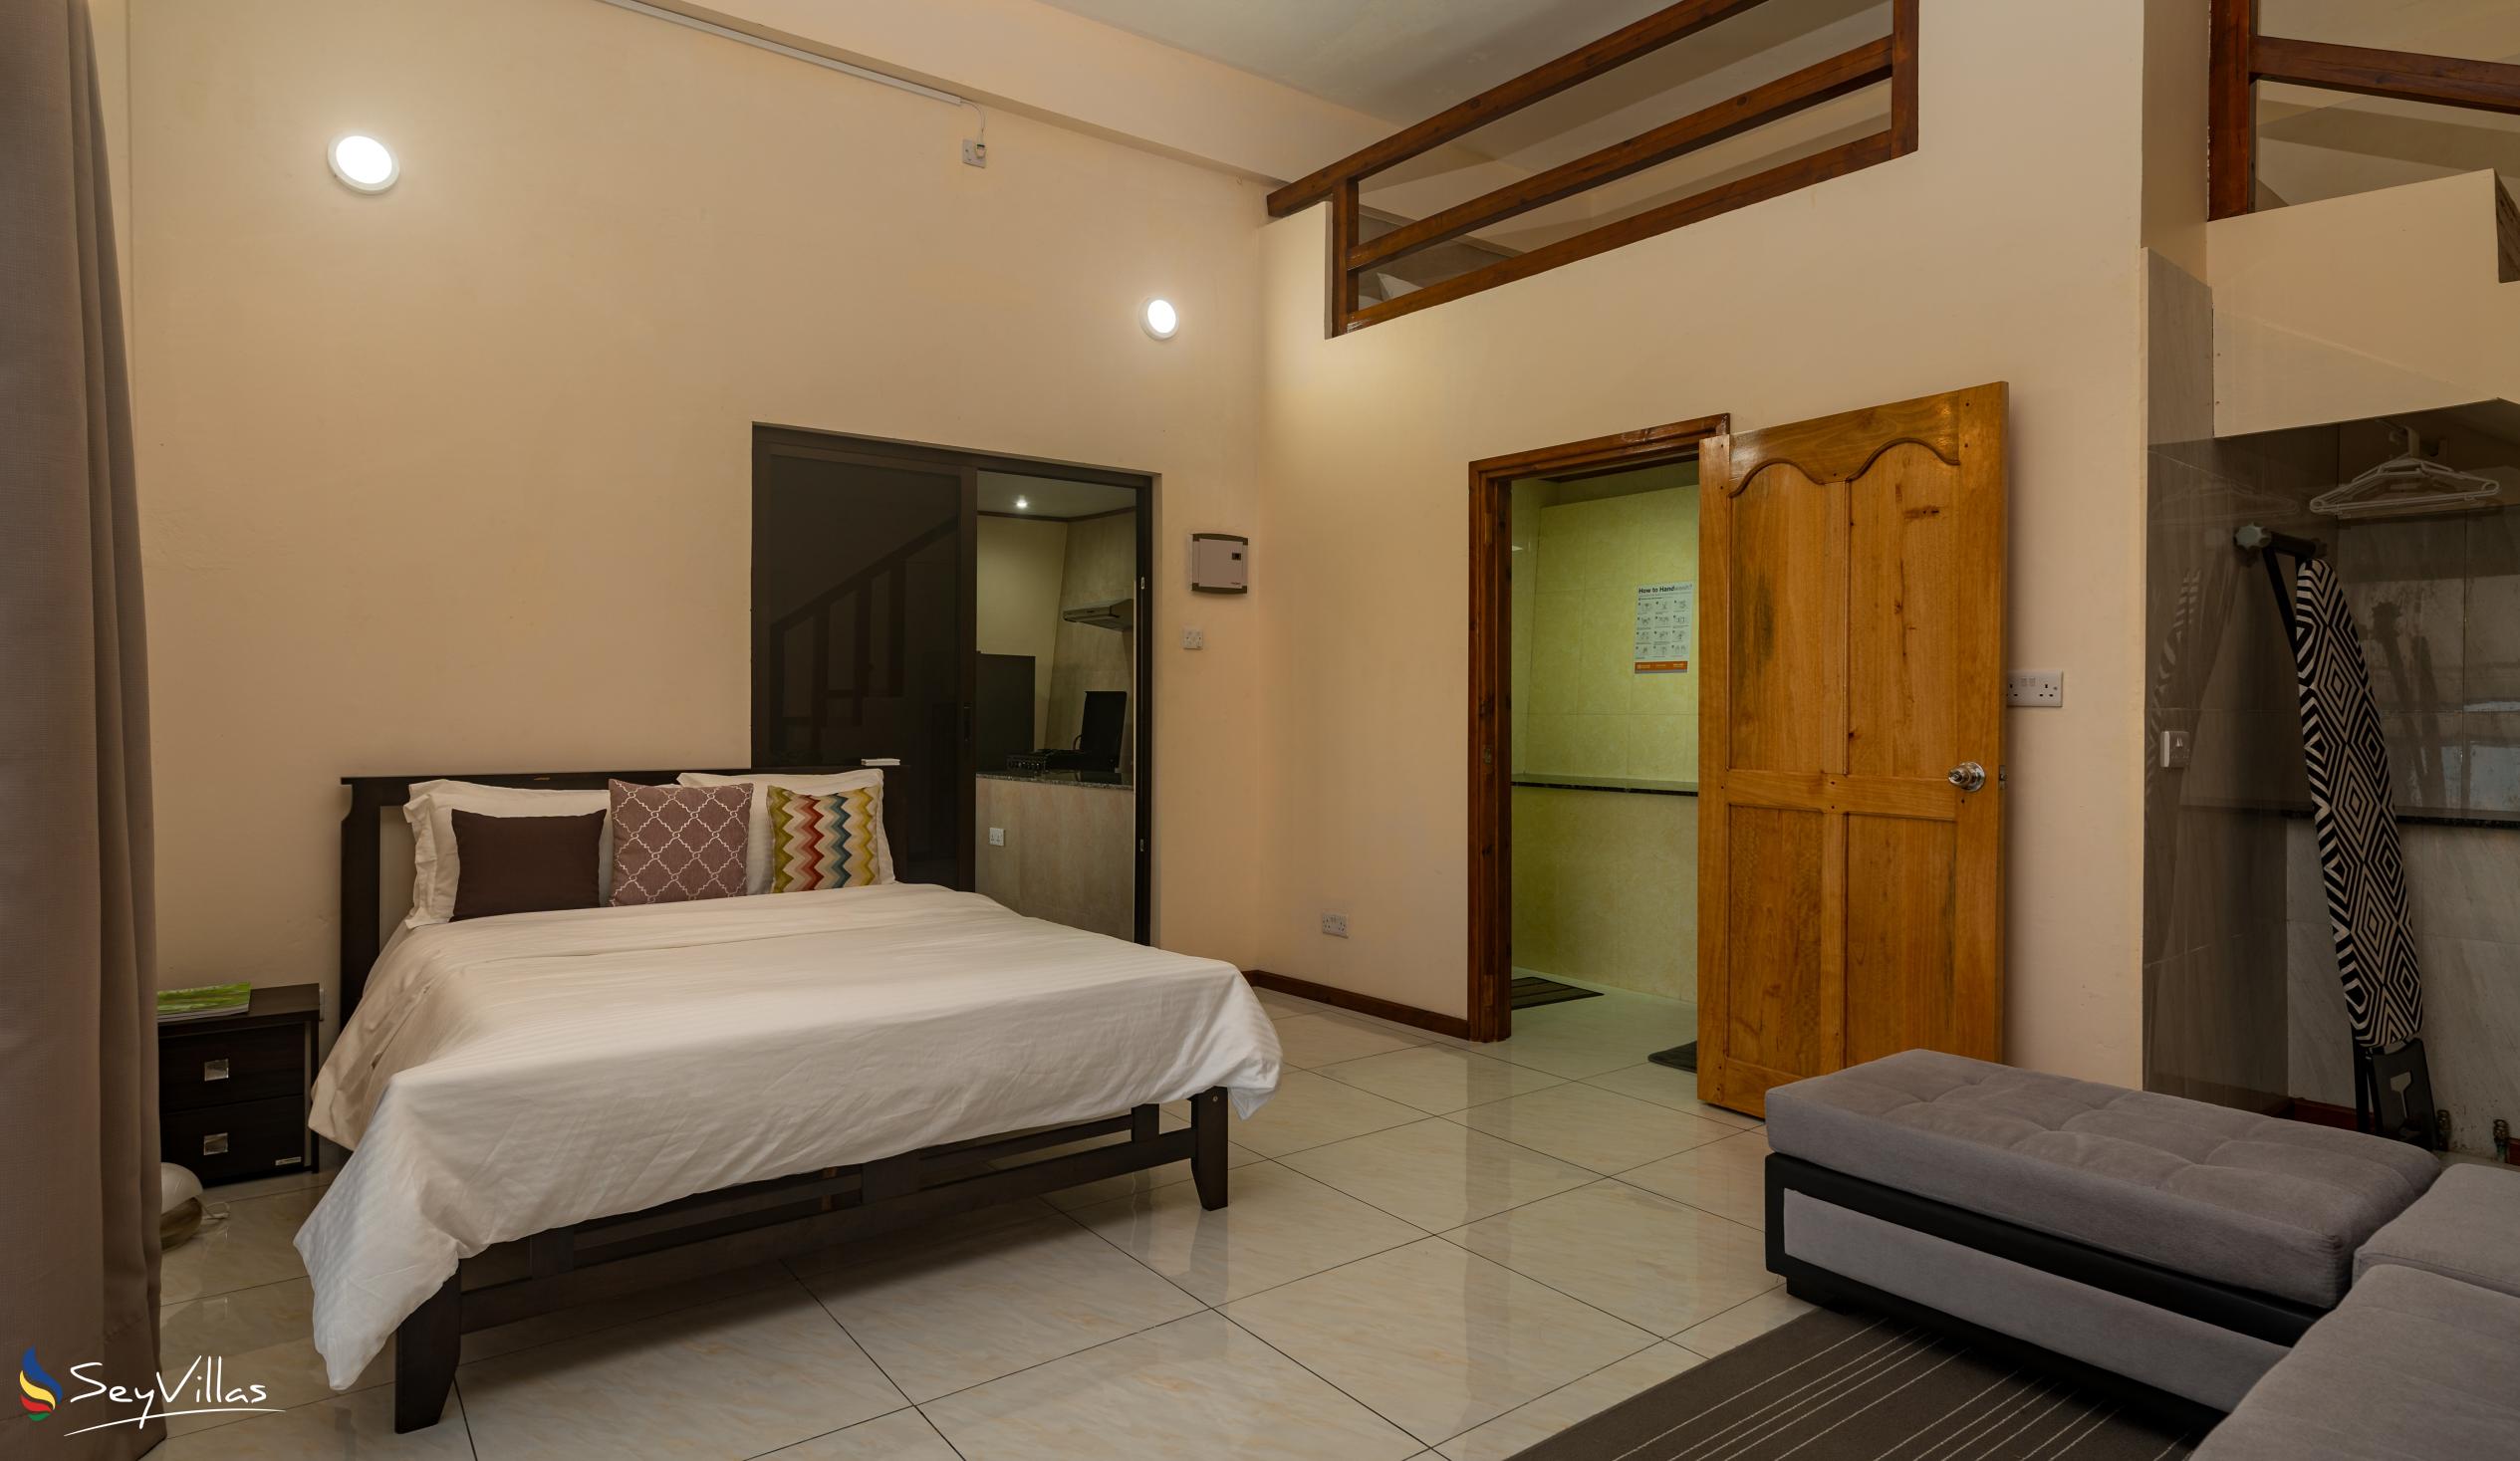 Foto 58: Maison L'Horizon - Appartement 1 chambre Lalin - Mahé (Seychelles)